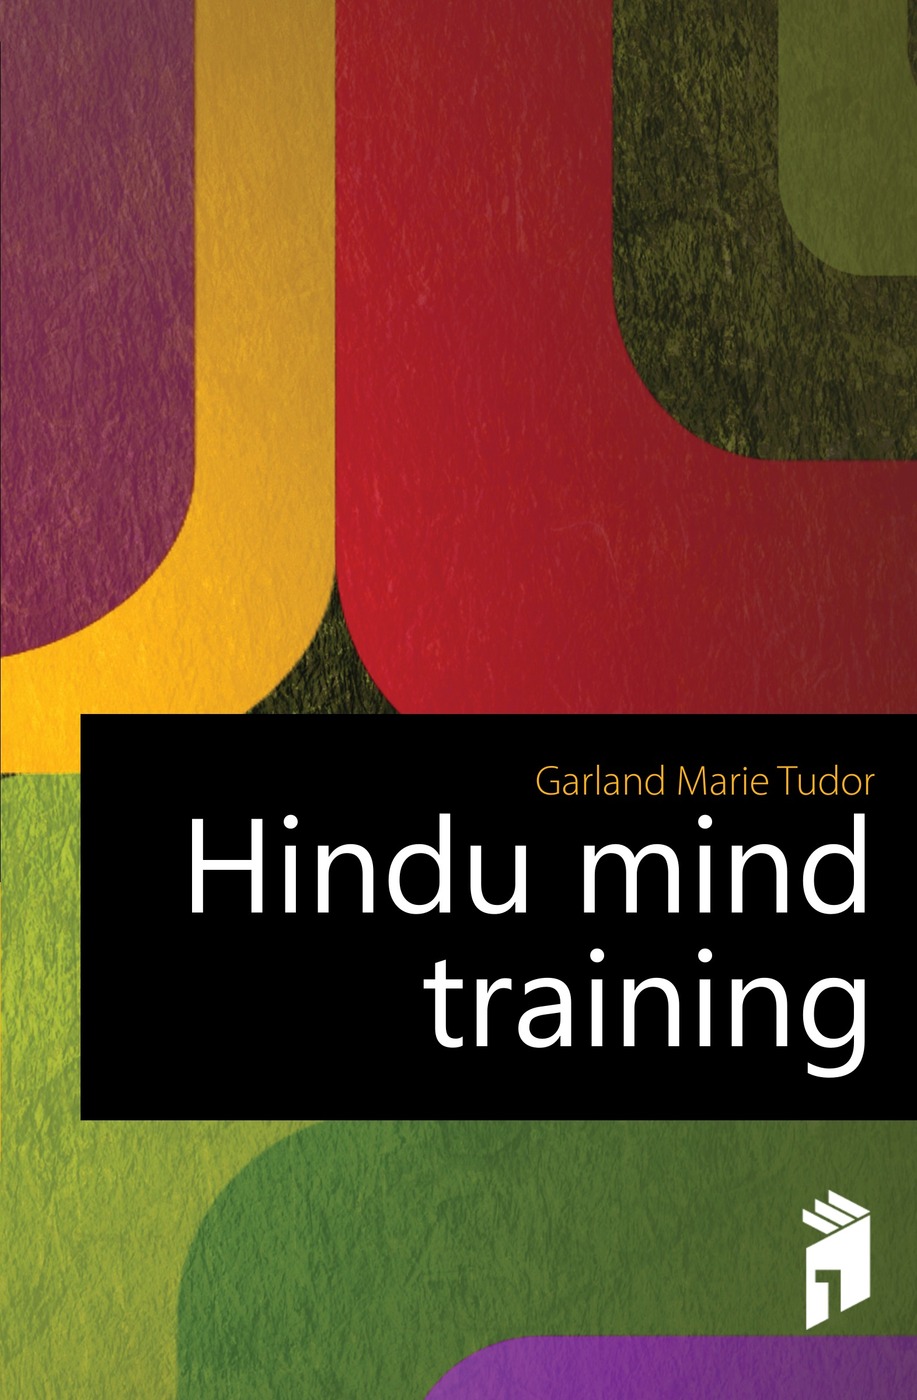 Hindu mind training